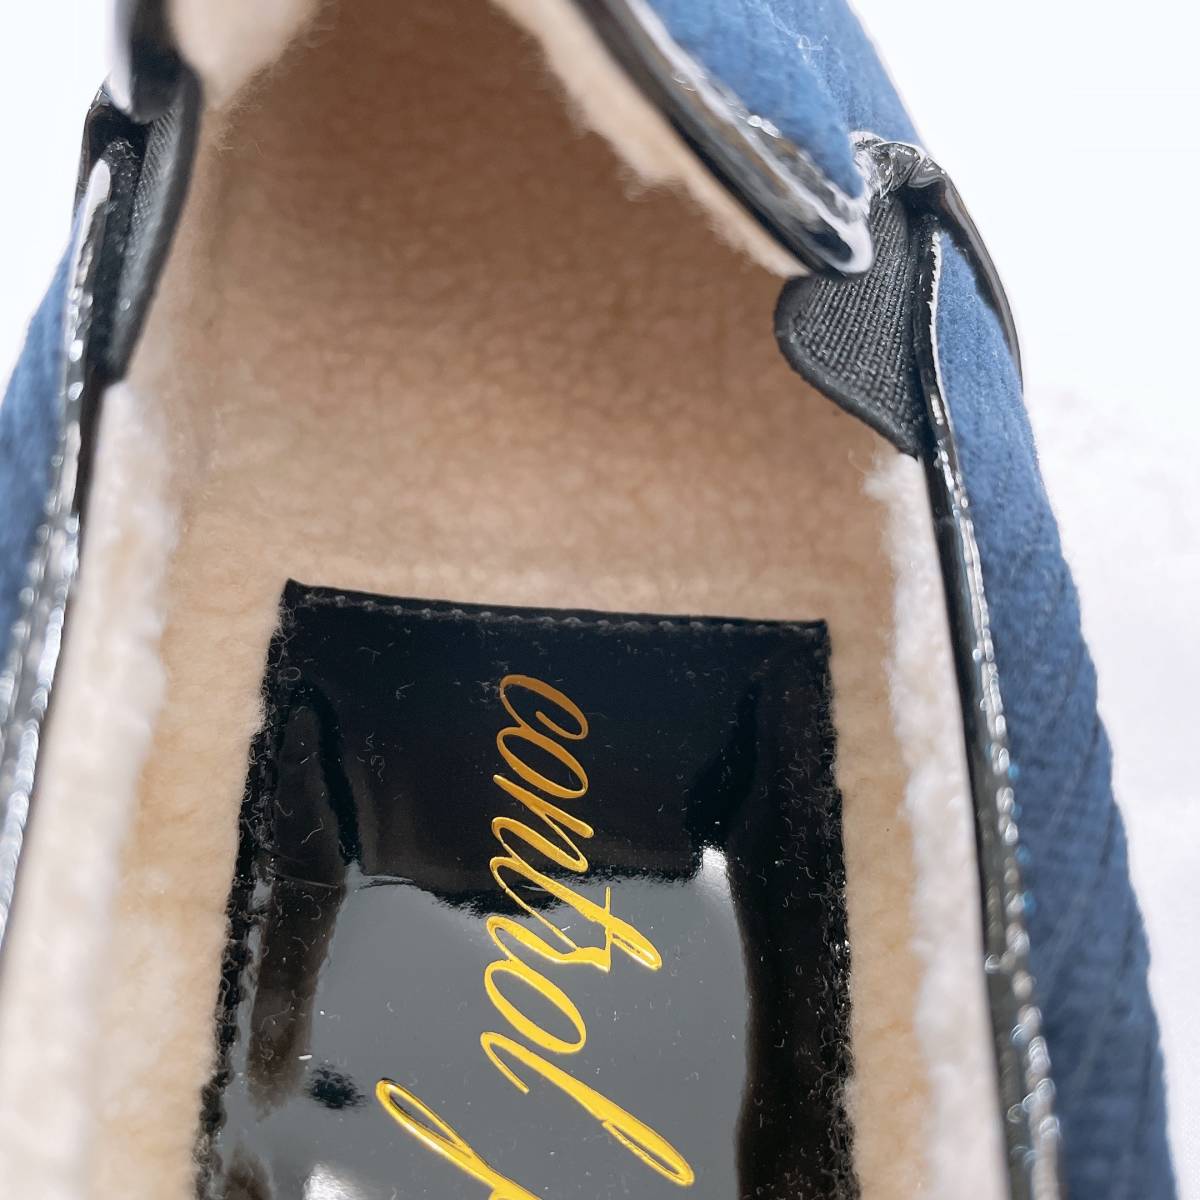 新古品 レディース23.0 Bou Jeloud スニーカー 靴 ネイビー 紺 紐なし シンプル かわいい かっこいい ブージュルード 【22198】